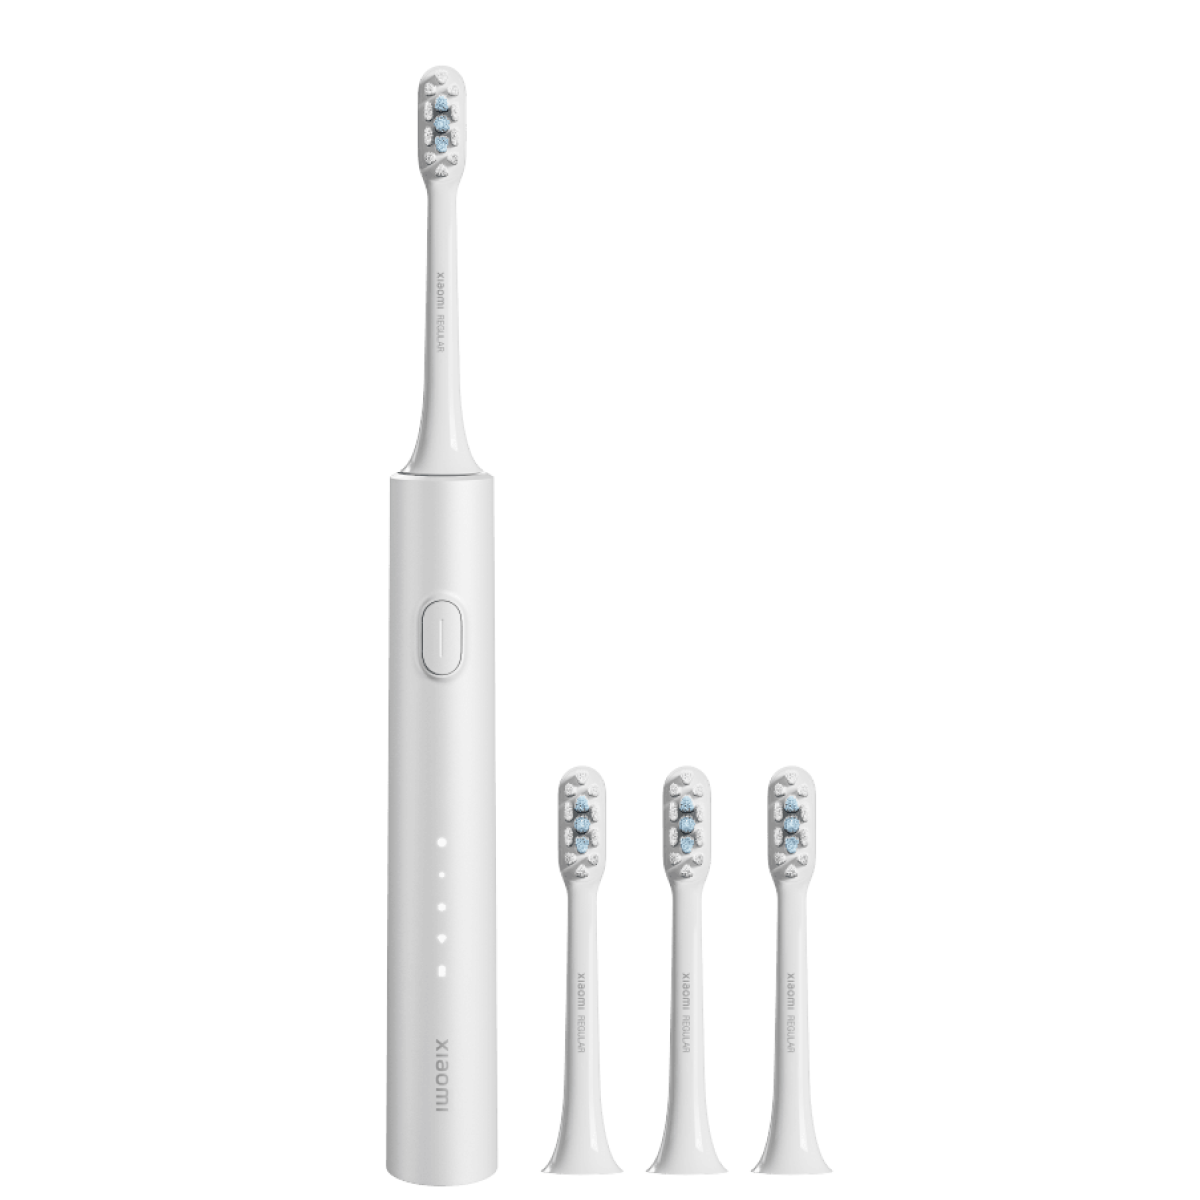 Электрическая зубная щетка Xiaomi Electric Toothbrush T302 серебристая электрическая зубная щетка xiaomi mijia electric toothbrush t100 голубой